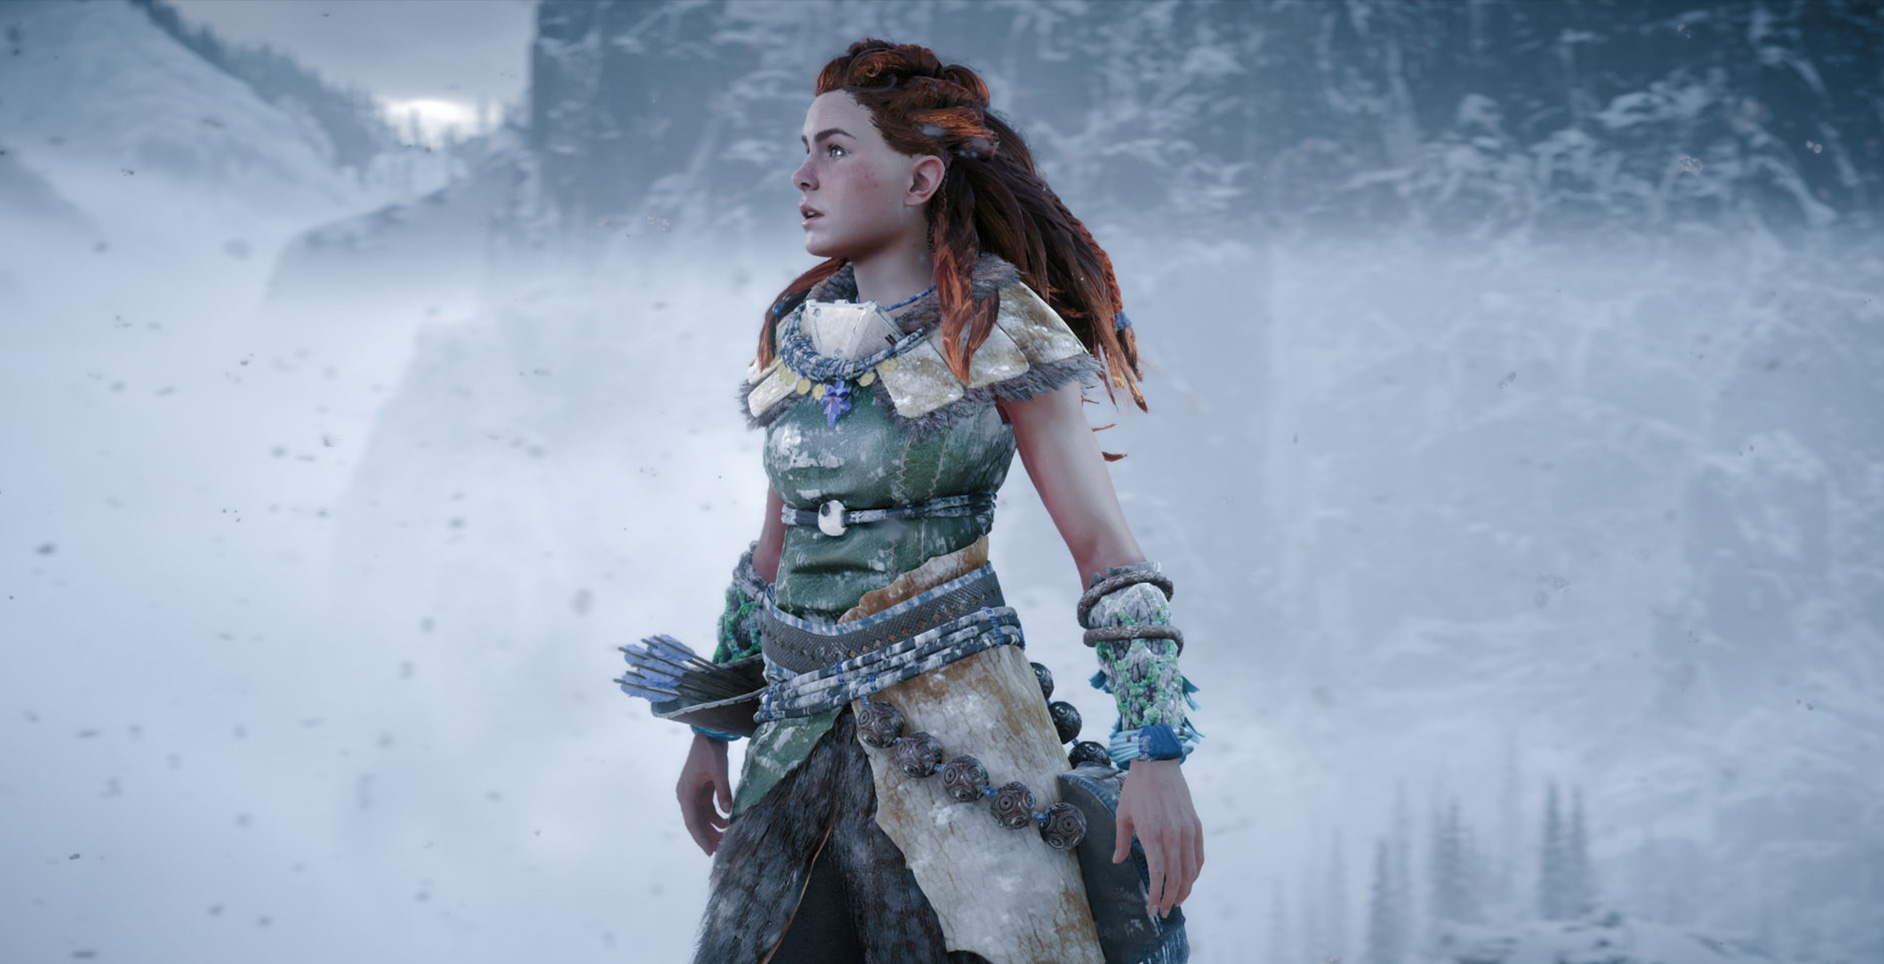 Horizon Zero Dawn Frozen Wilds: DLC release date confirmed for PS4